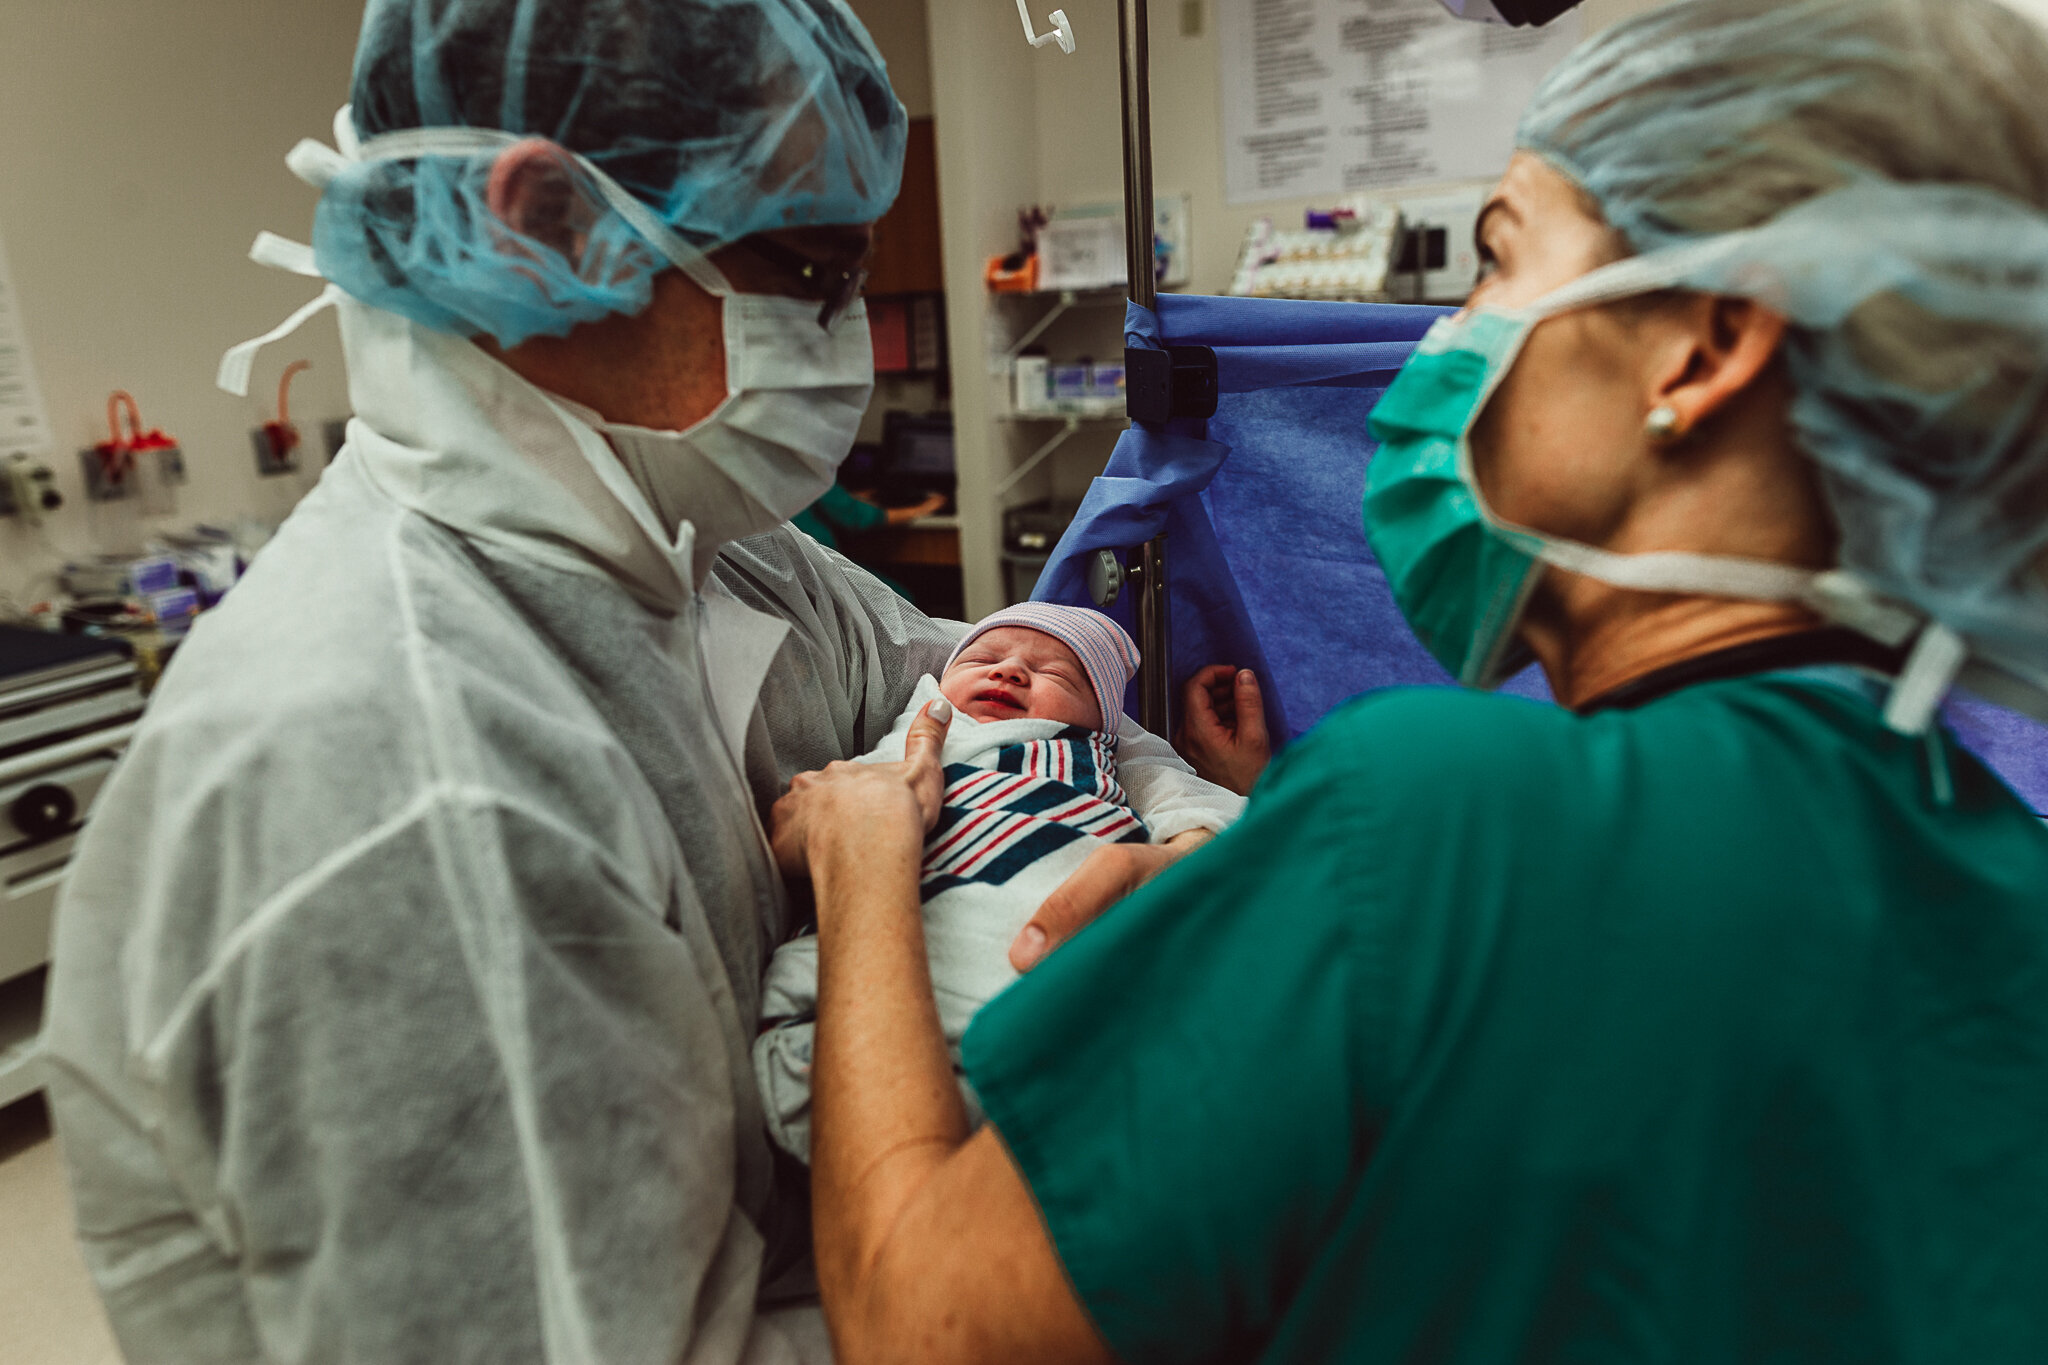 cesarean-birth-postpartum-maggie-williams-3917.jpg